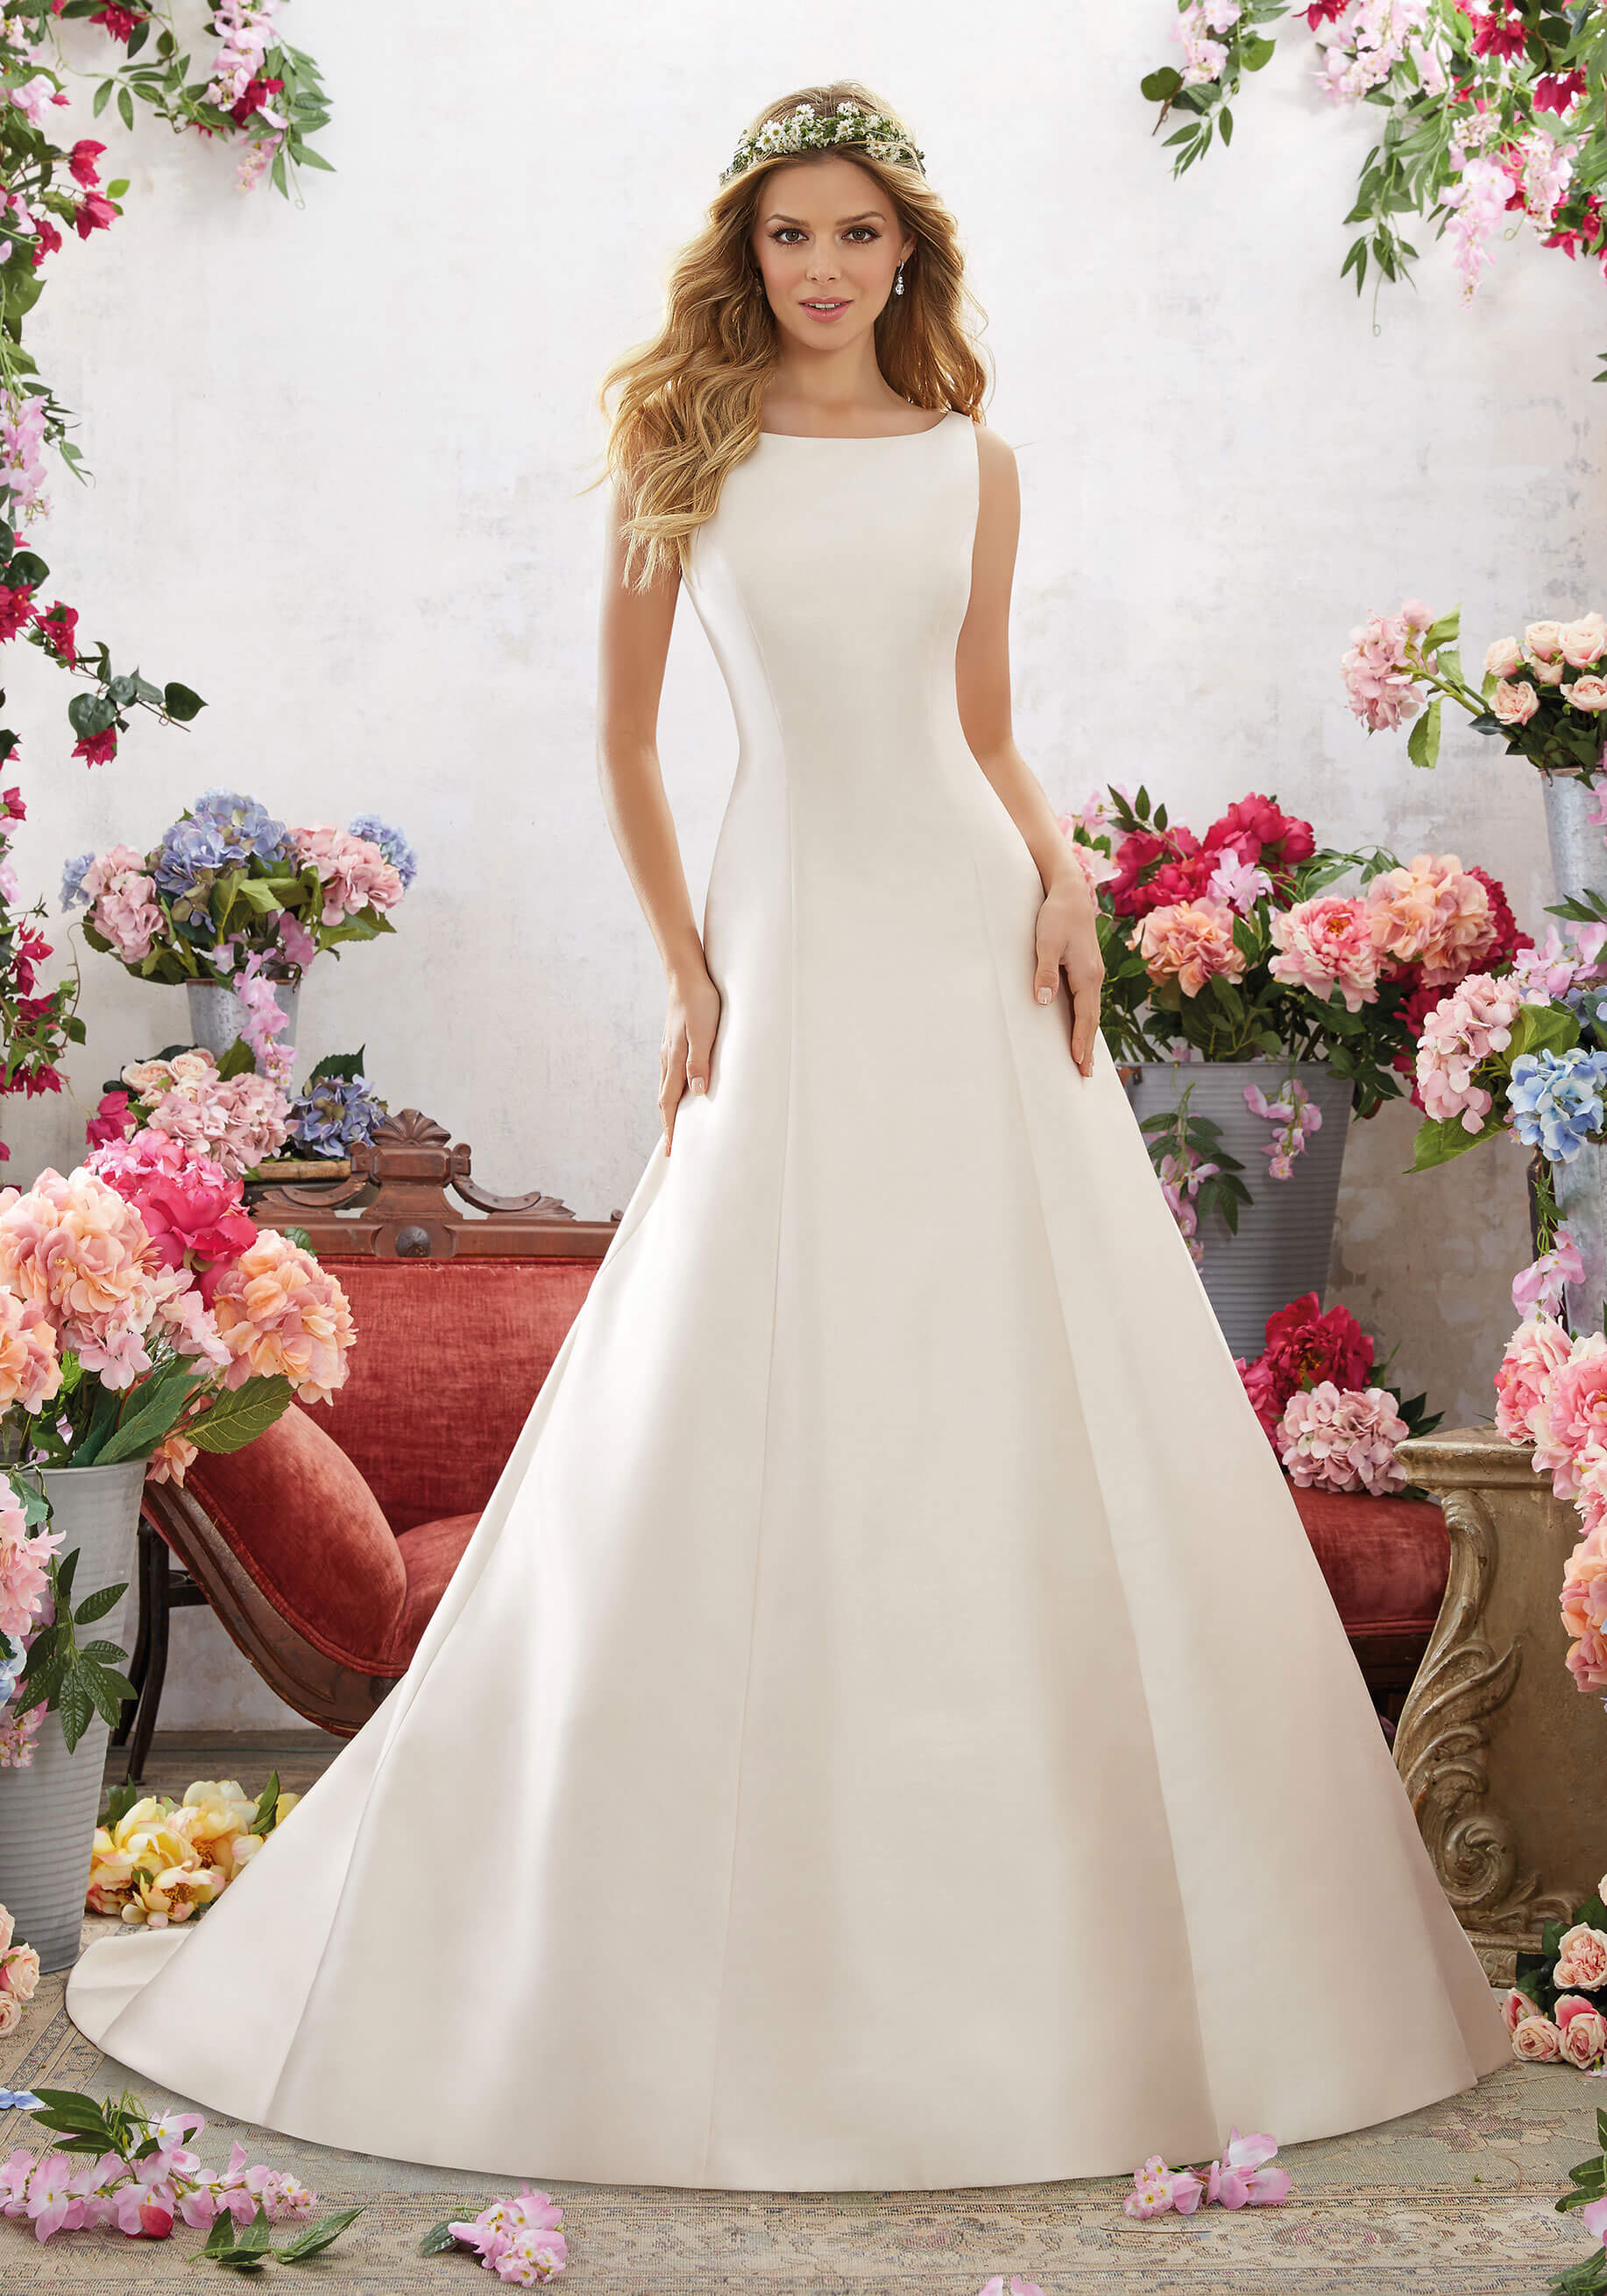 Скромное свадебное платье: простота и элегантность